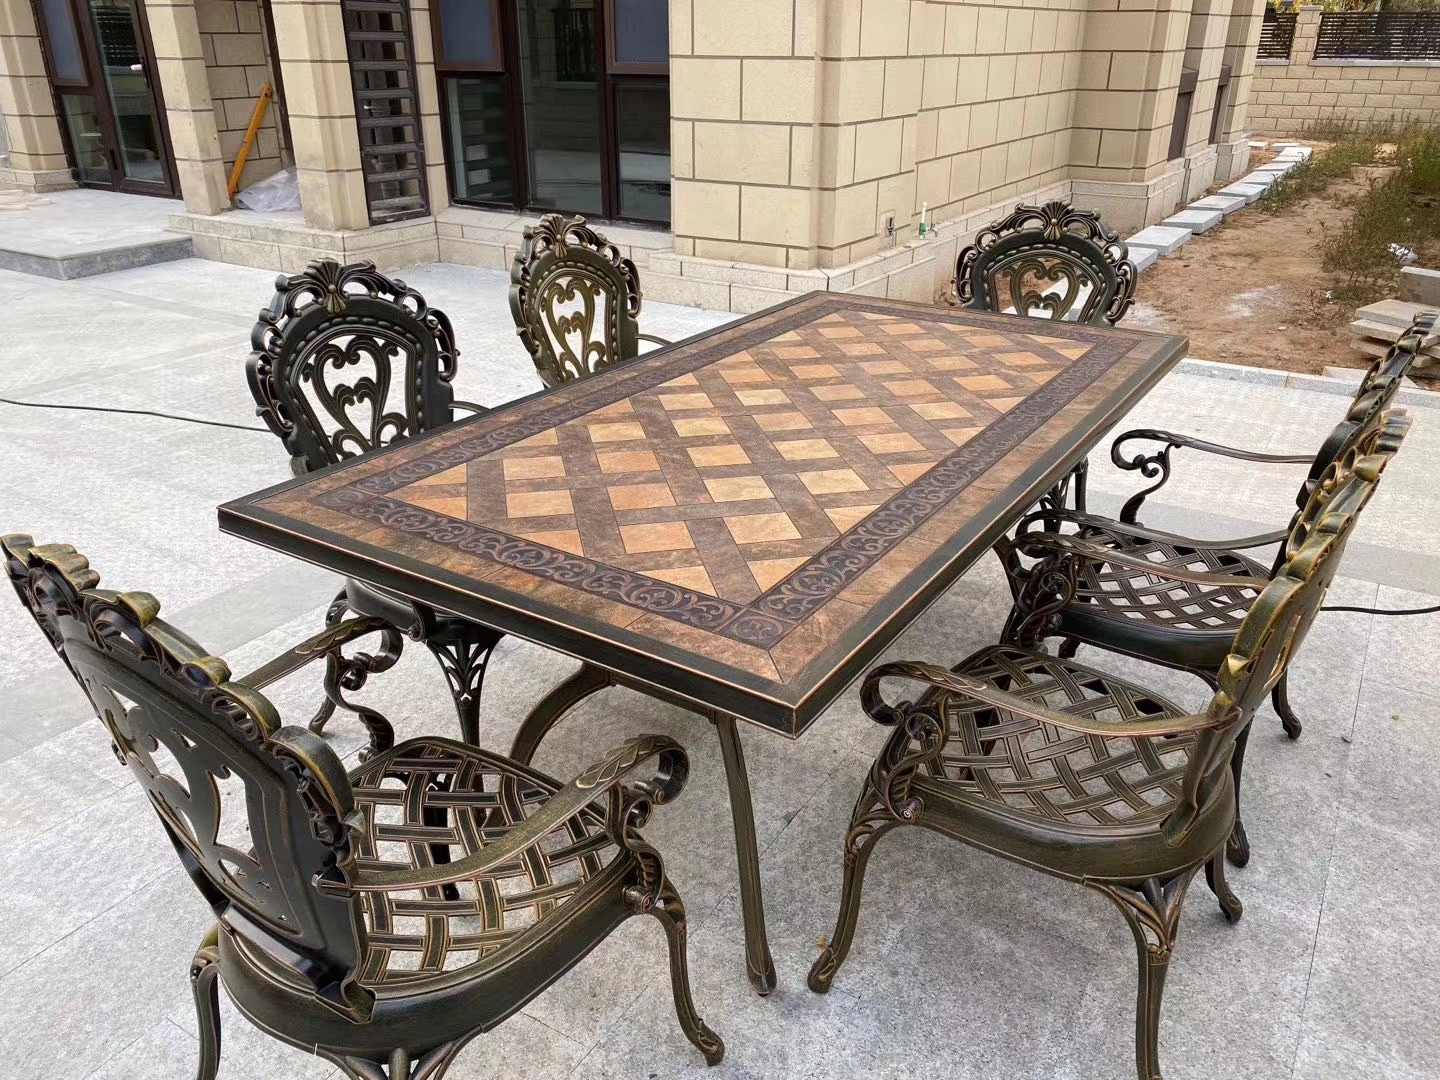 Садовый обеденный стол из металла с мозаикой, кованый стол для уличных кафе на 8 персон, мебель для летних веранд ресторанов, чугунный стол в столовую, кованая садовая мебель из литого алюминия.